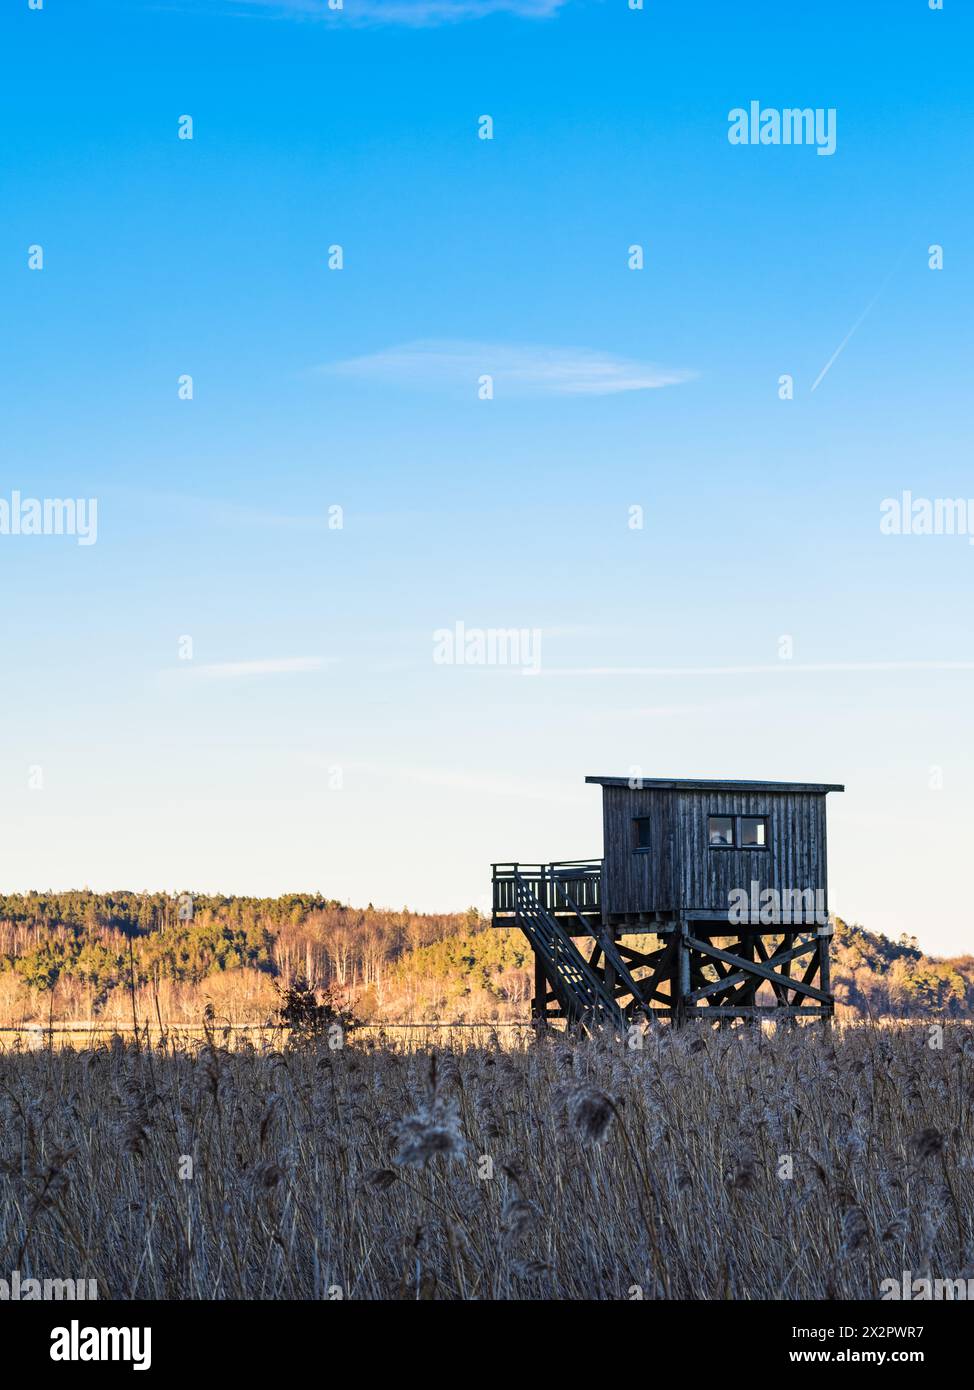 Una piccola struttura in legno sorge al centro di un campo, che funge da torre di osservazione degli uccelli. La torre offre un punto di osservazione privilegiato per il birdwatching Foto Stock